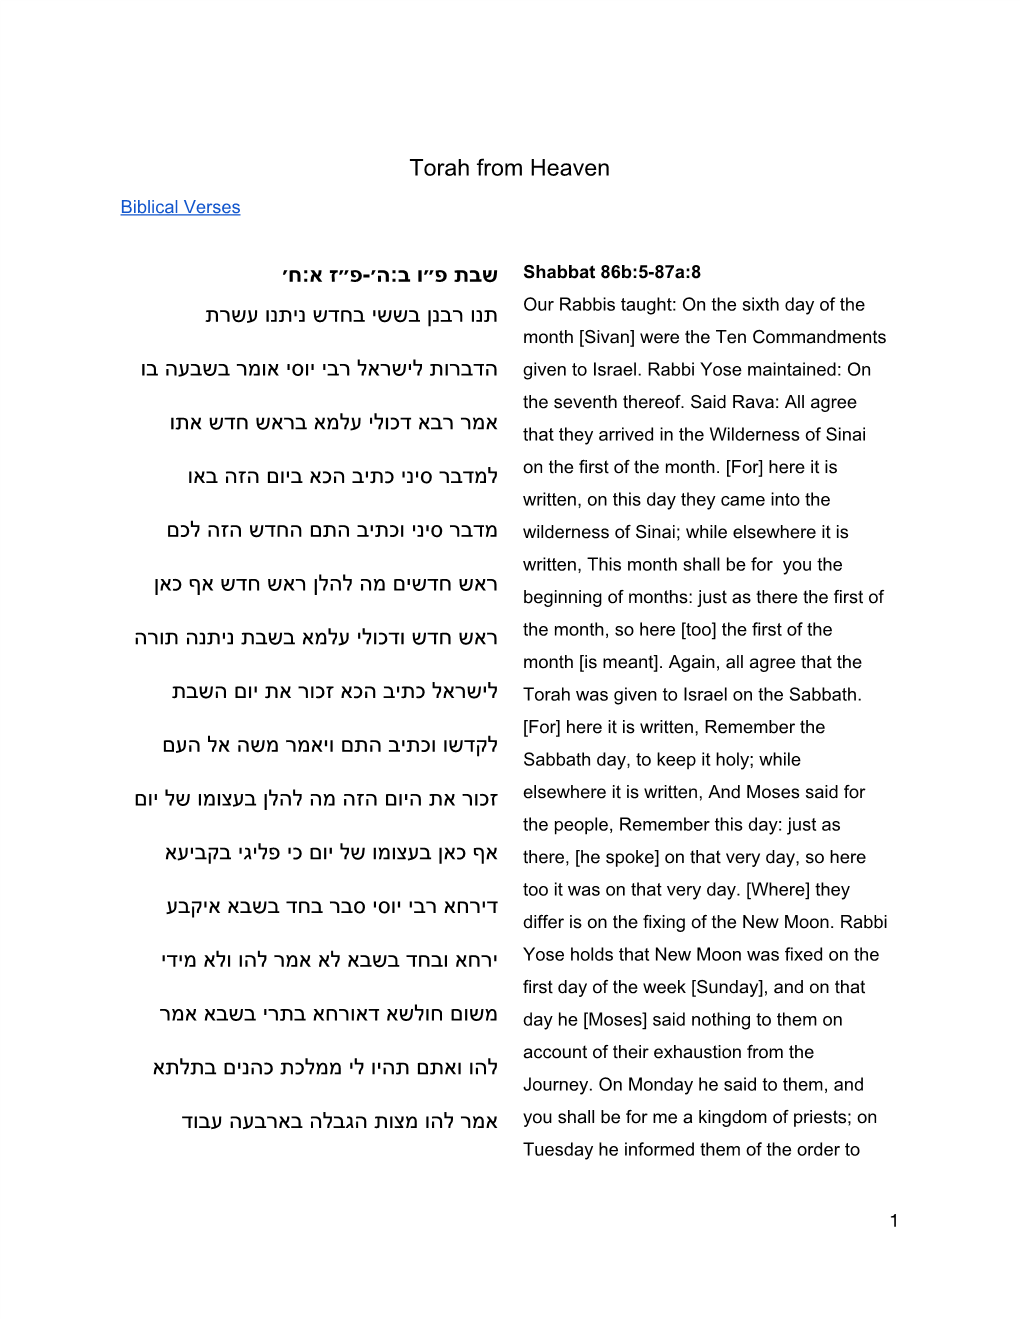 Torah from Heaven שבת פ״ו ב:ה׳-פ״ז א:ח׳ תנו רבנן בששי בחדש ניתנו עשרת